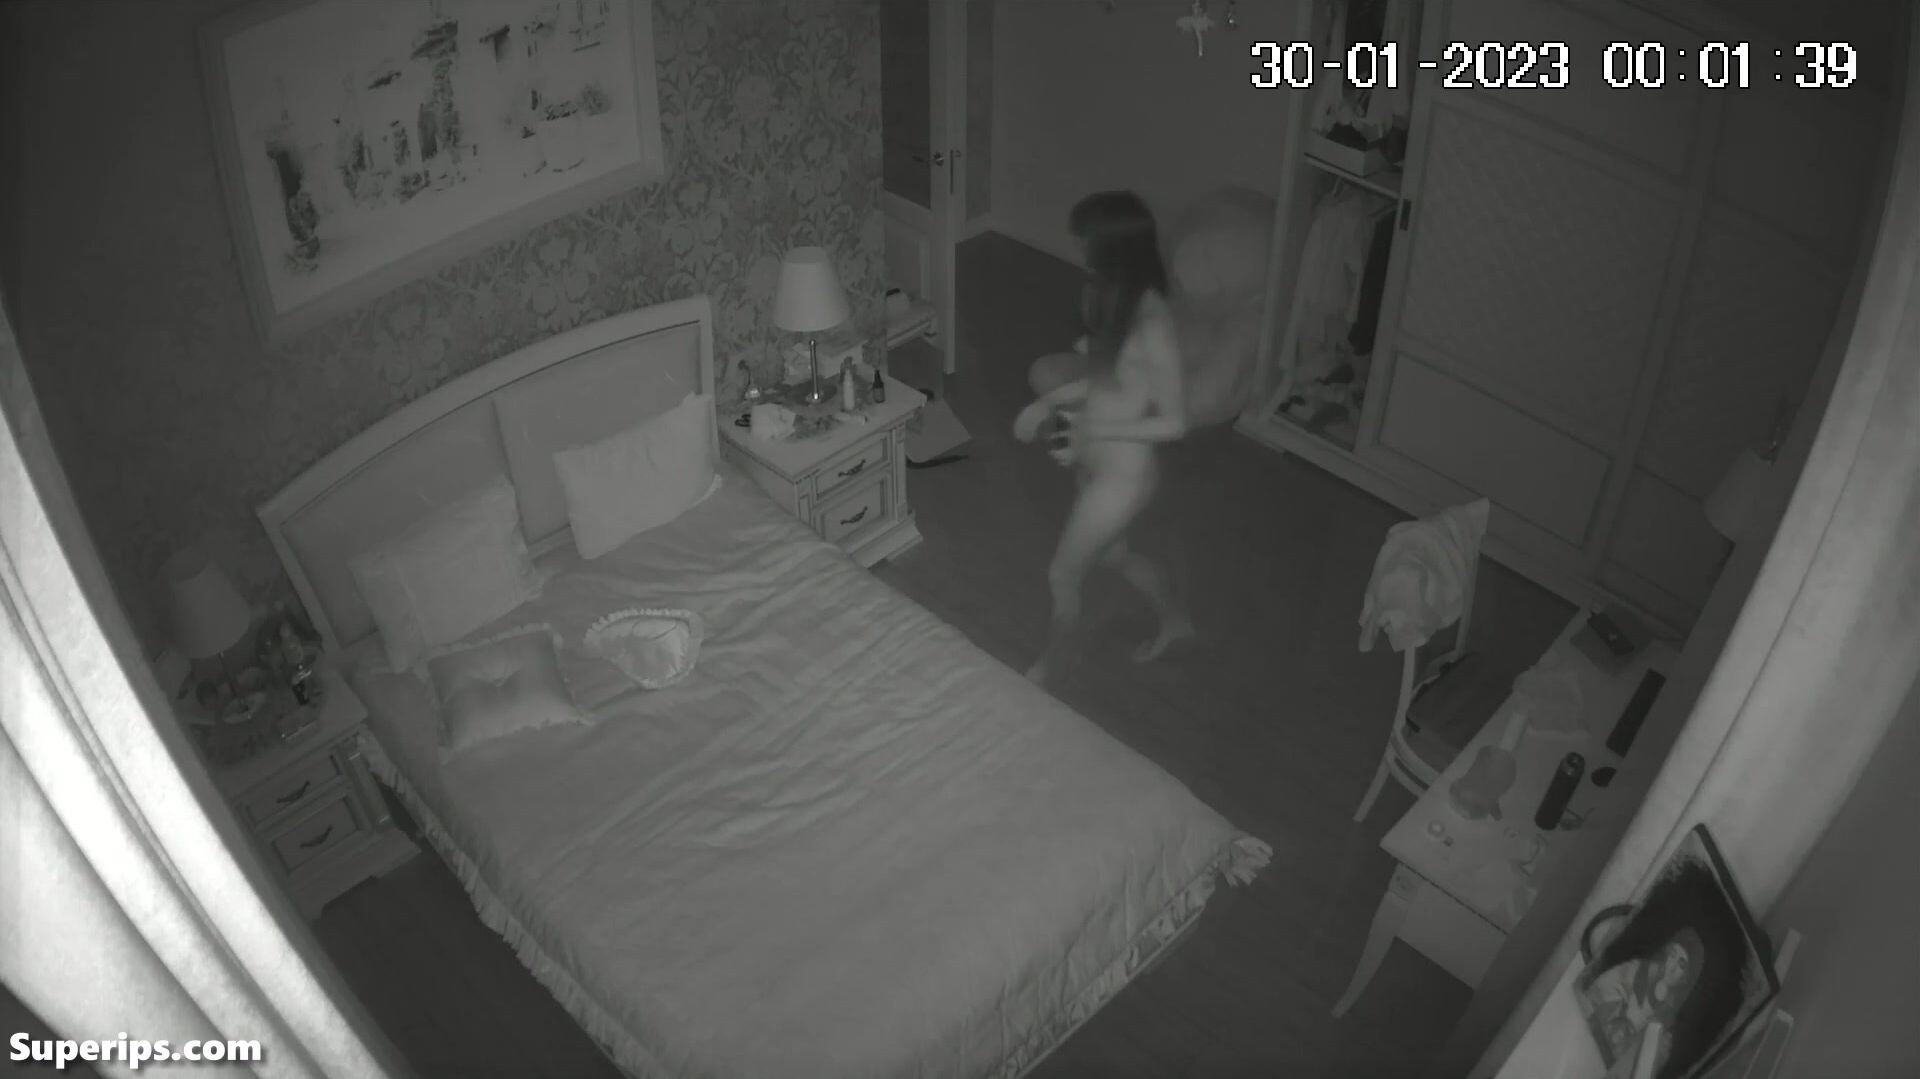 Tender teenage Ukrainian girl sleeps naked in her bed